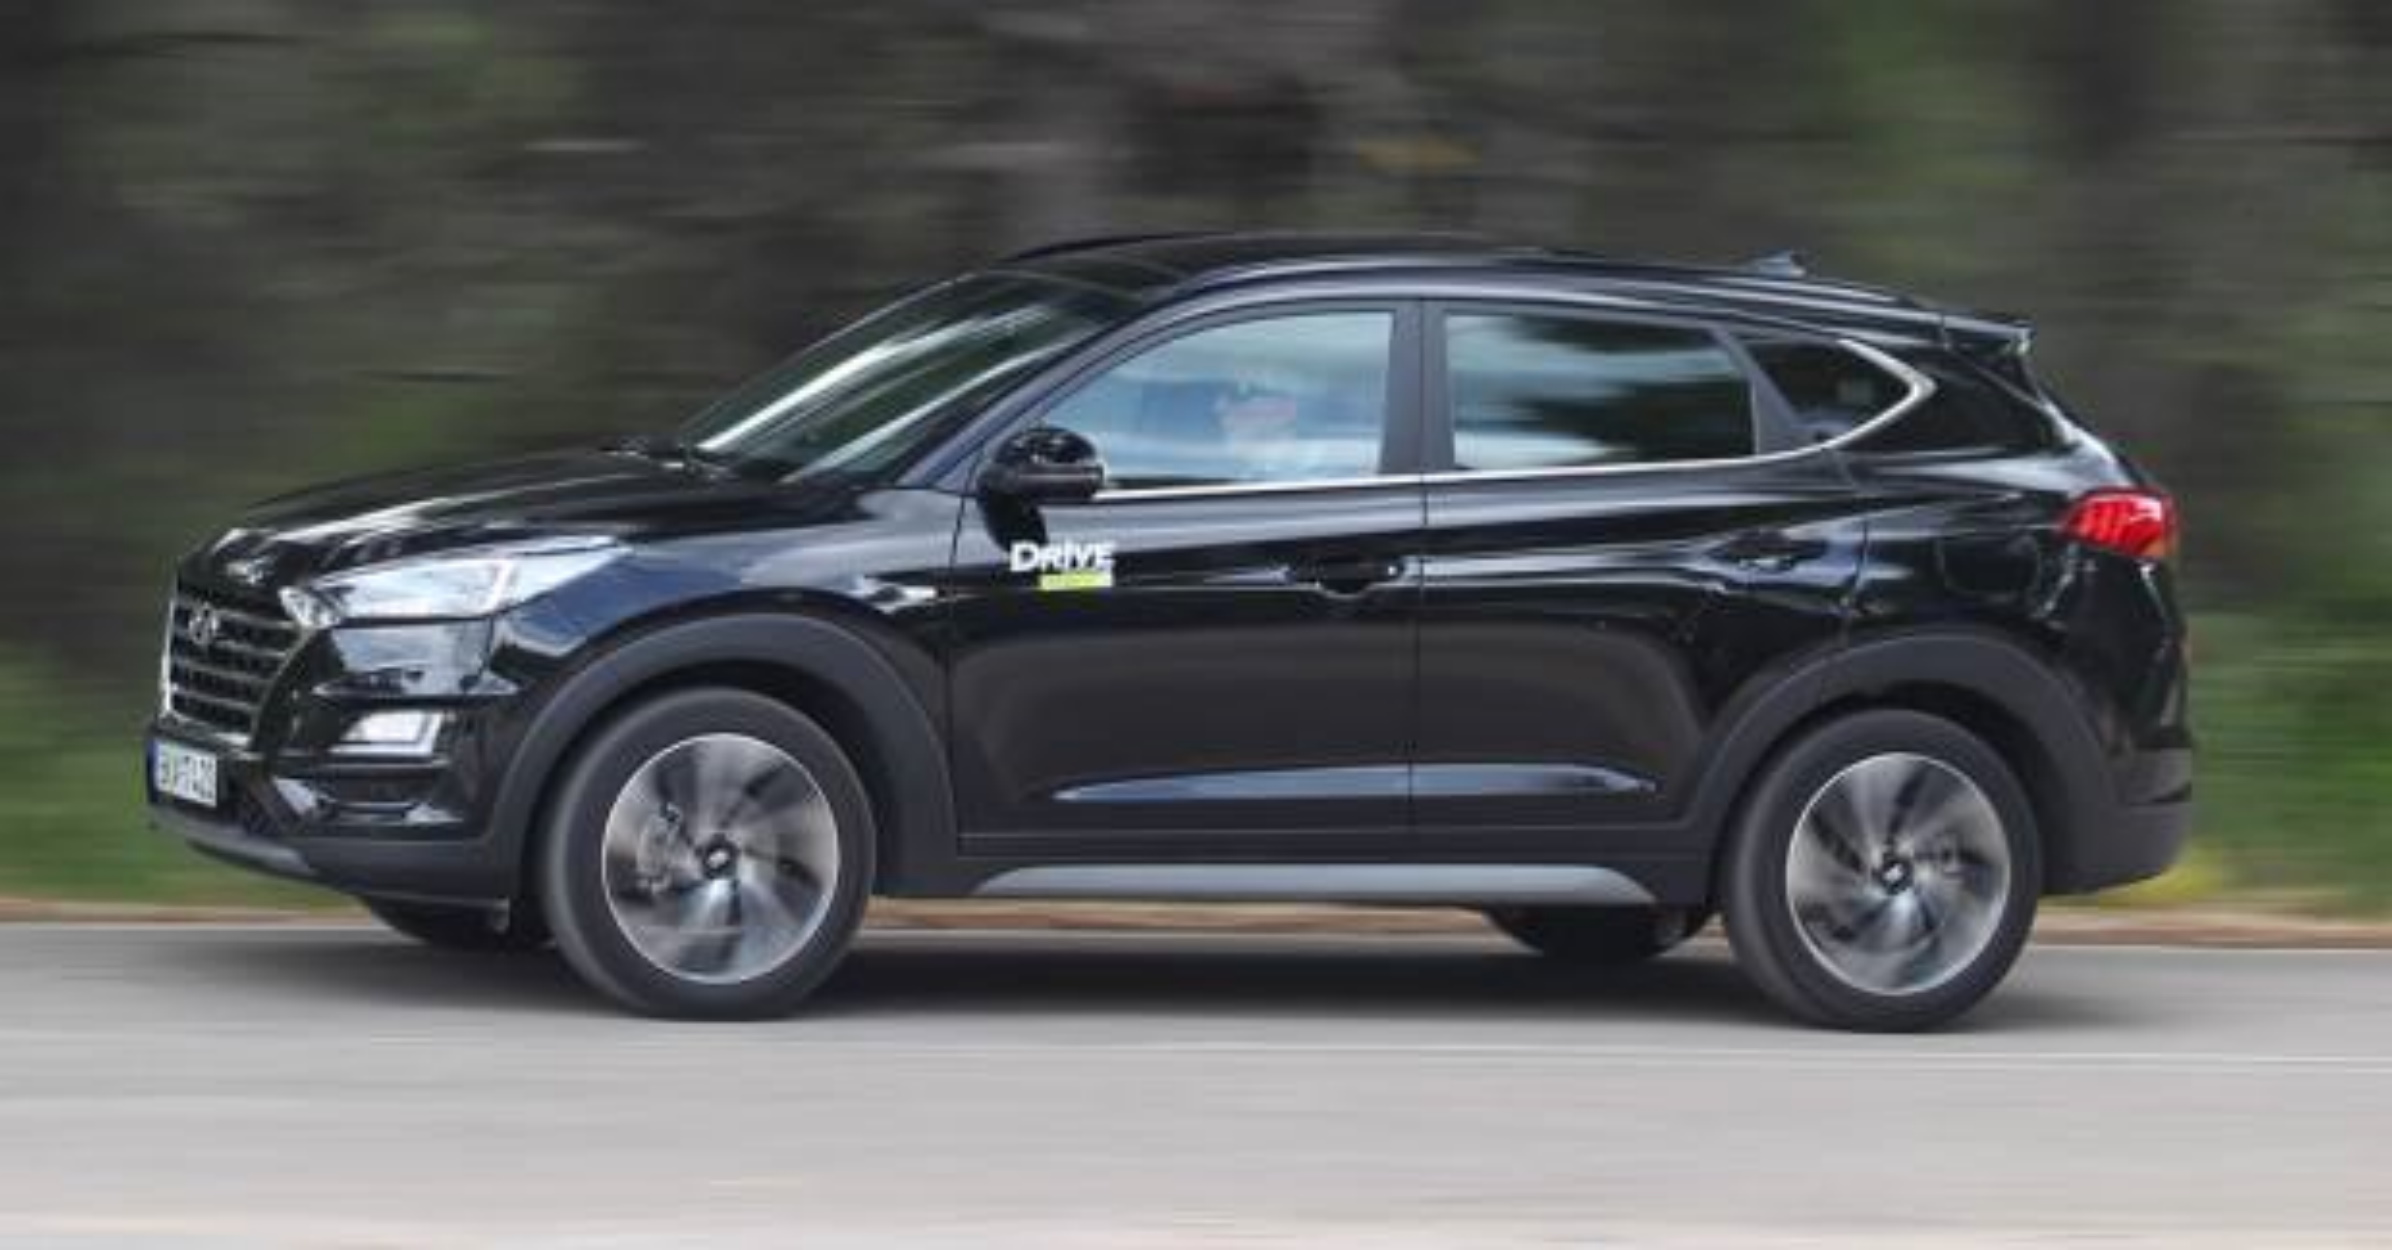 Δοκιμάζουμε το νέο Hyundai Tucson 1.6 CRDi με το ήπιο υβριδικό σύστημα! [pics]